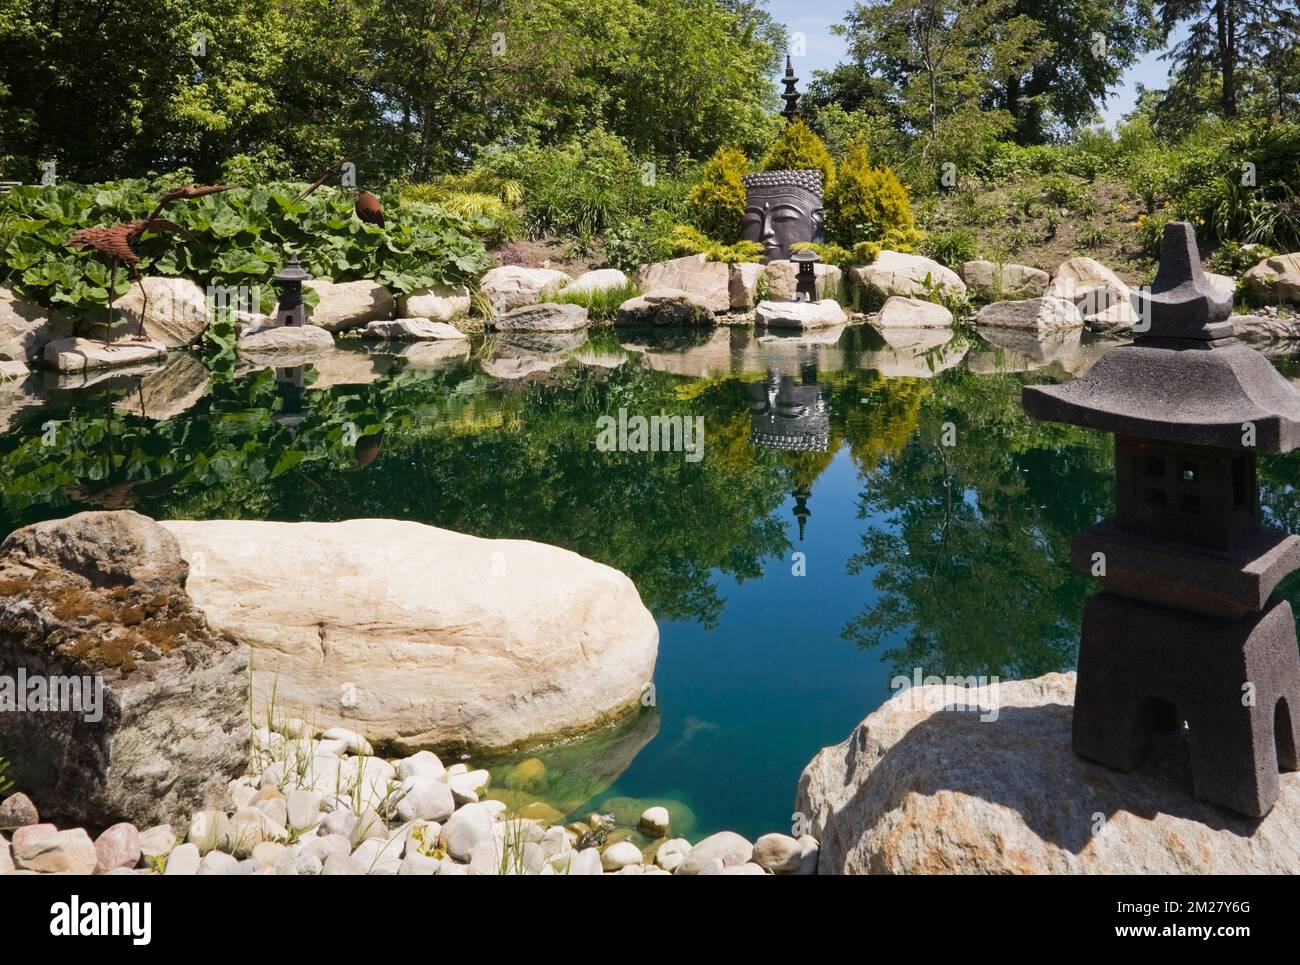 Pond with Asian ornamental sculptures in Zen garden at Route des Gerbes d'Angelica garden in spring, Mirabel, Quebec, Laurentians, Canada. Stock Photo